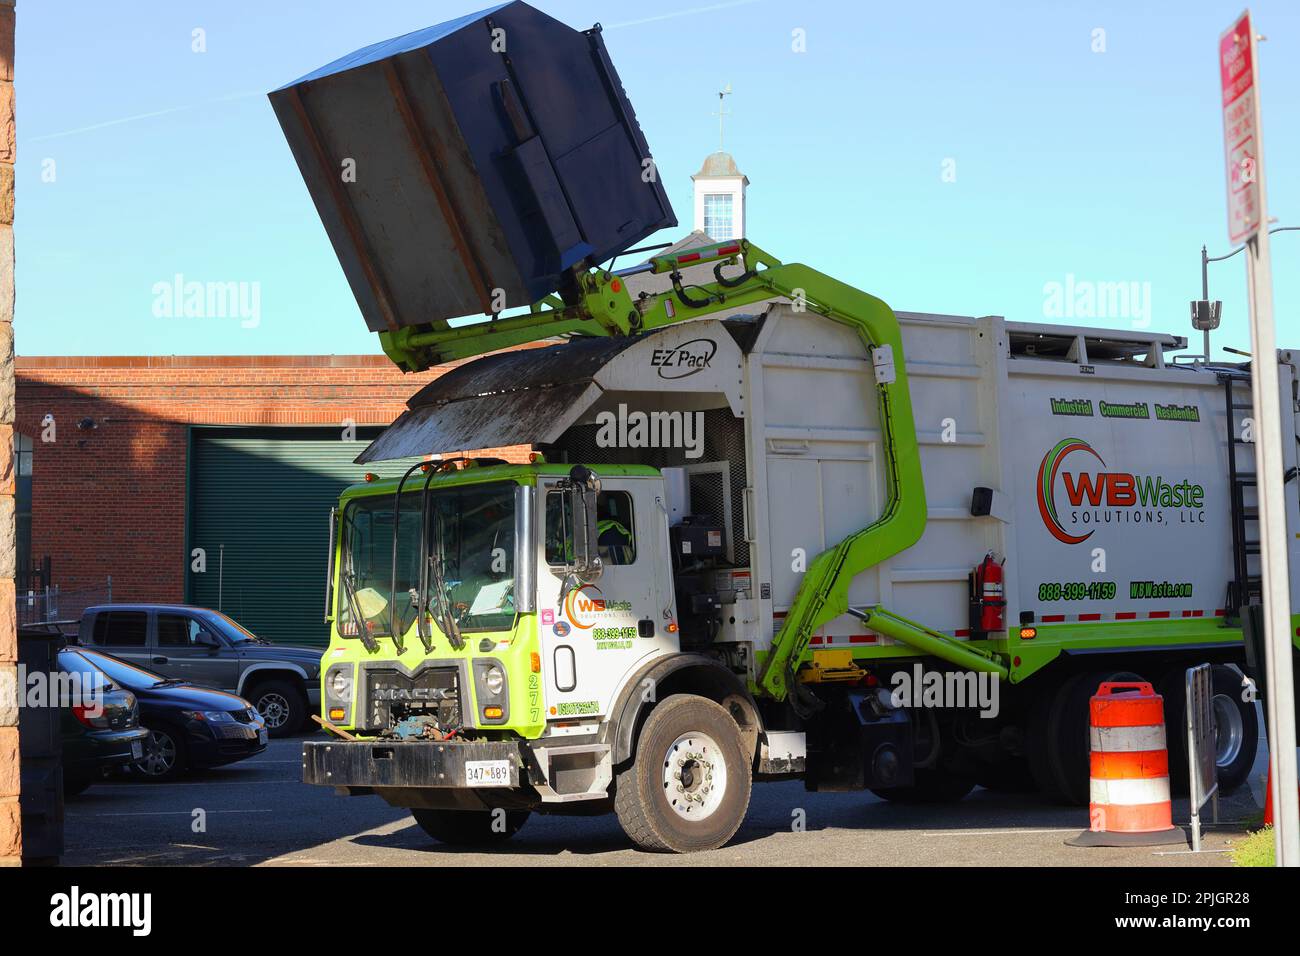 Un camion à chargement frontal WB Waste Solutions avec mécanisme Hercules, benne EZ Pack et châssis de camion Mack soulève une benne à ordures de 6 yd pour l'enlèvement des déchets. Banque D'Images